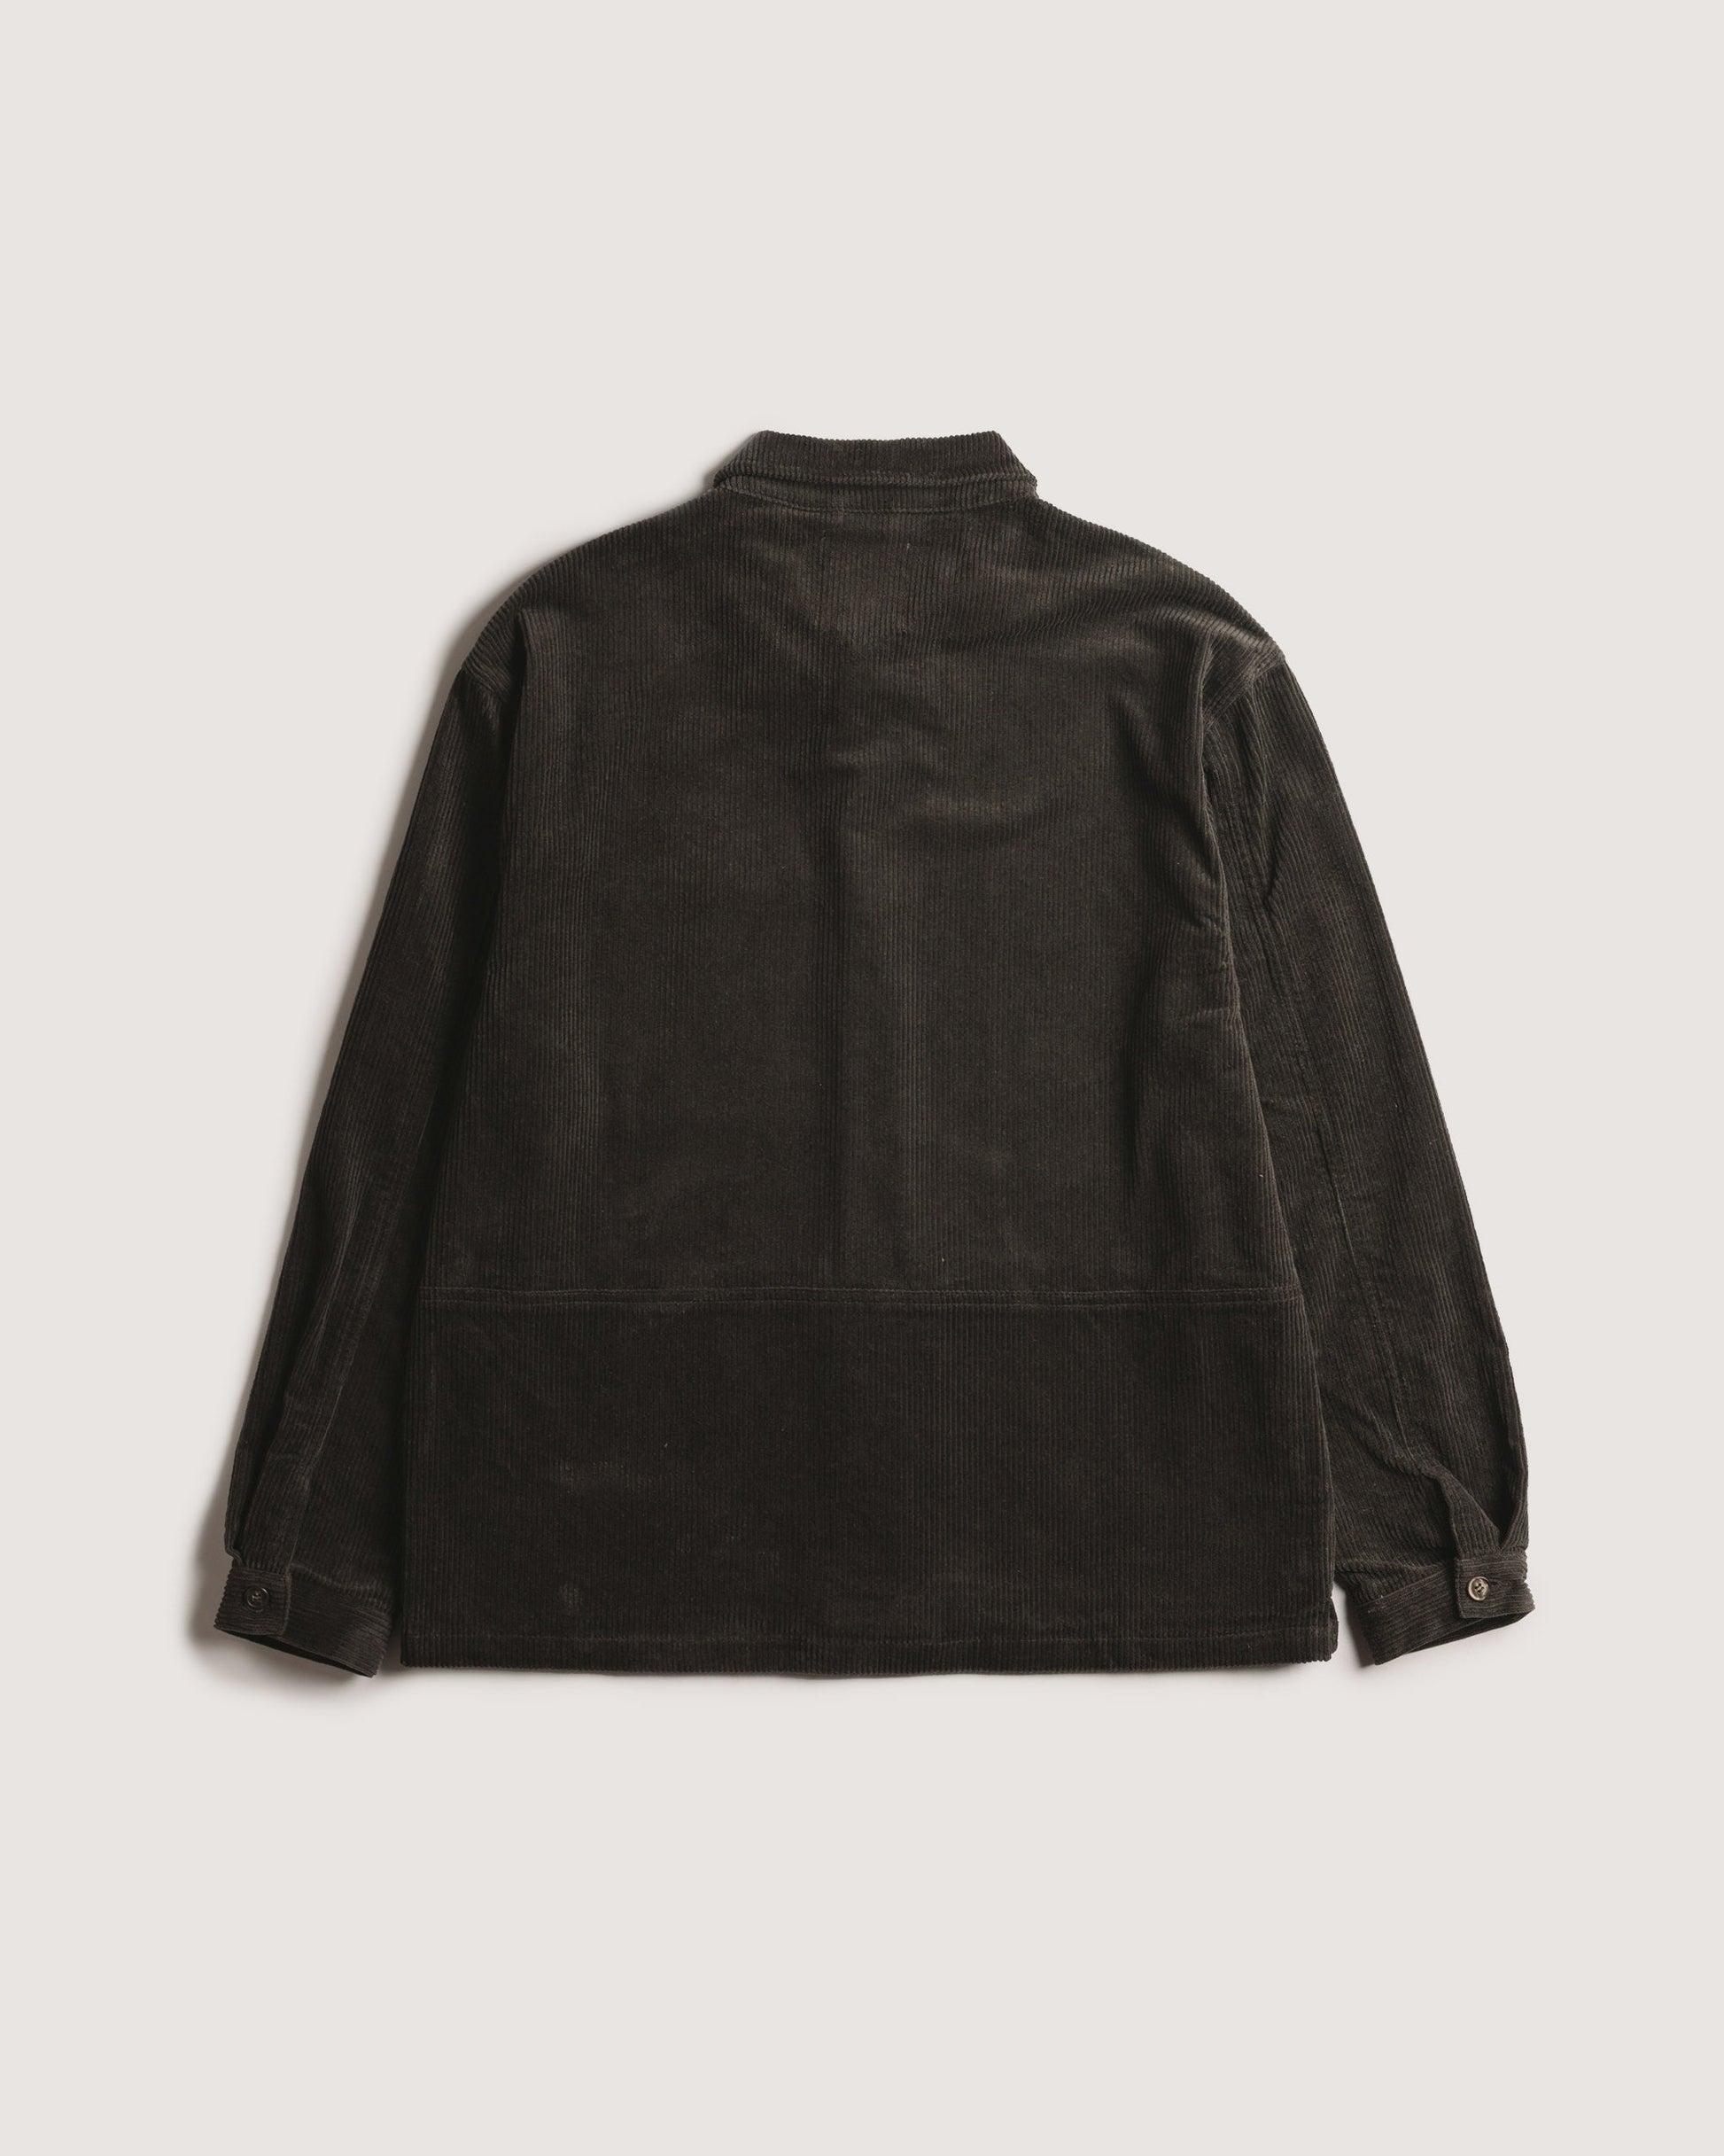 Allotment Jacket - Washed Black